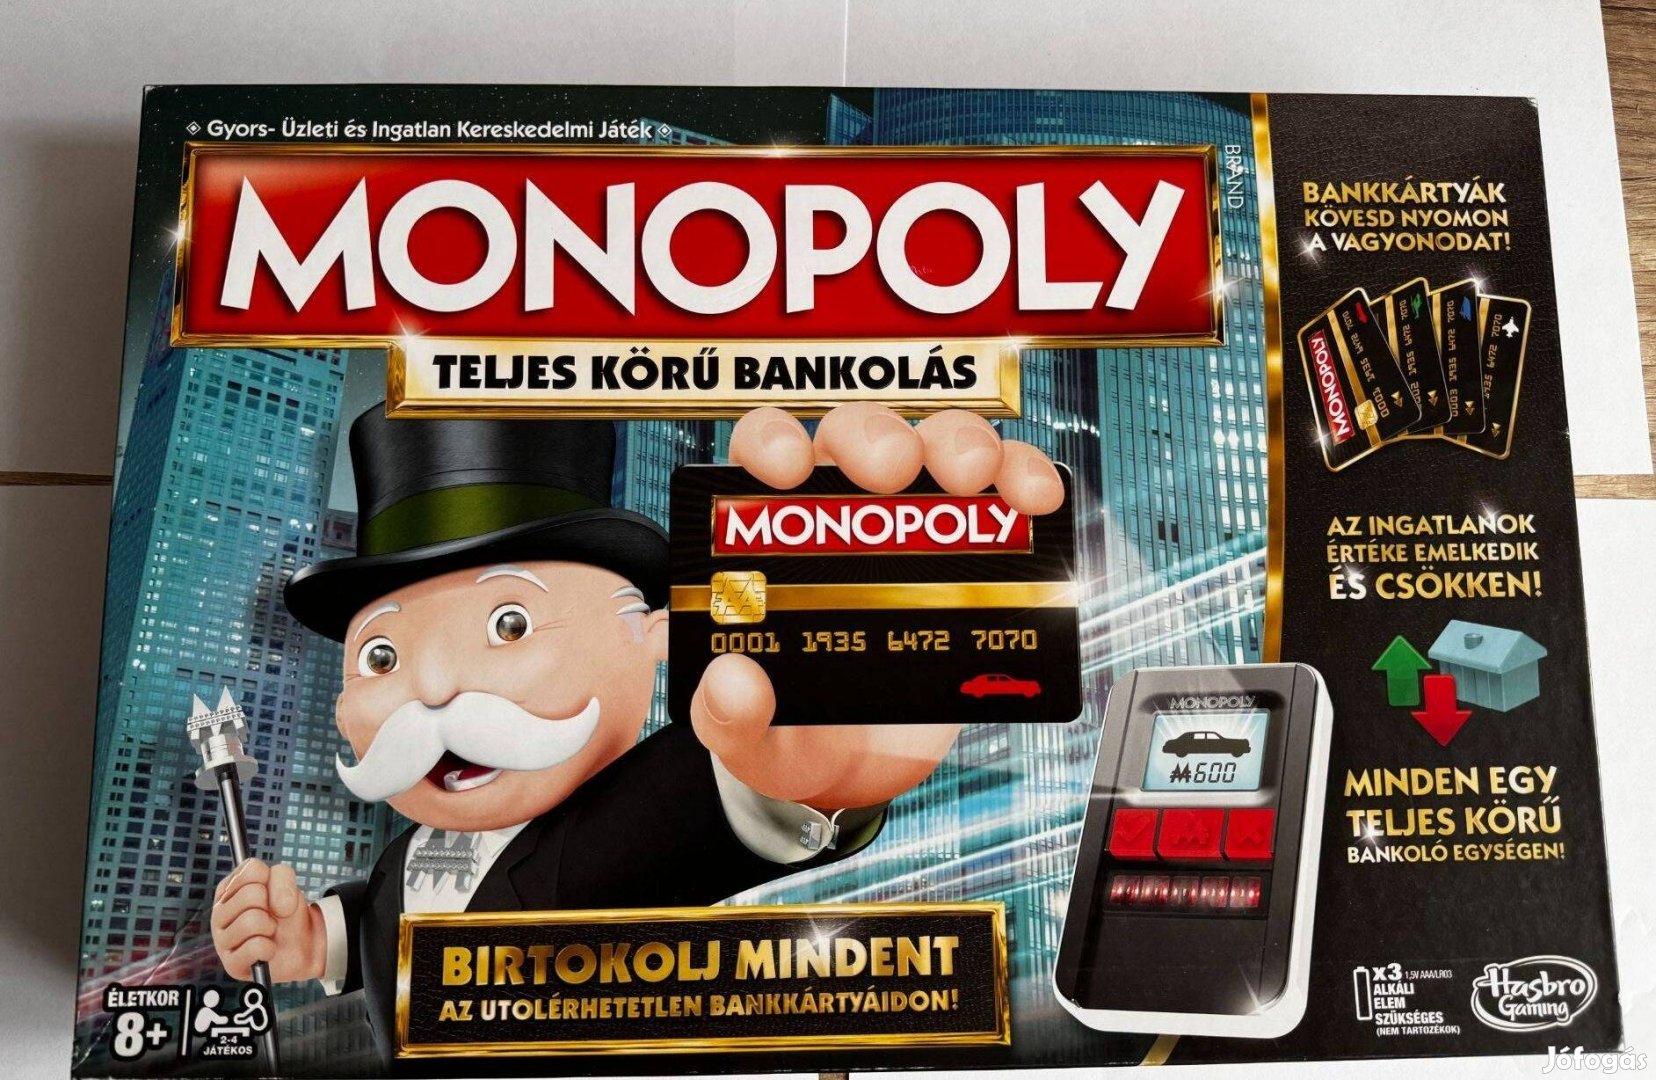 Monopoly - Teljes körű bankolás (2 bankkártyával)